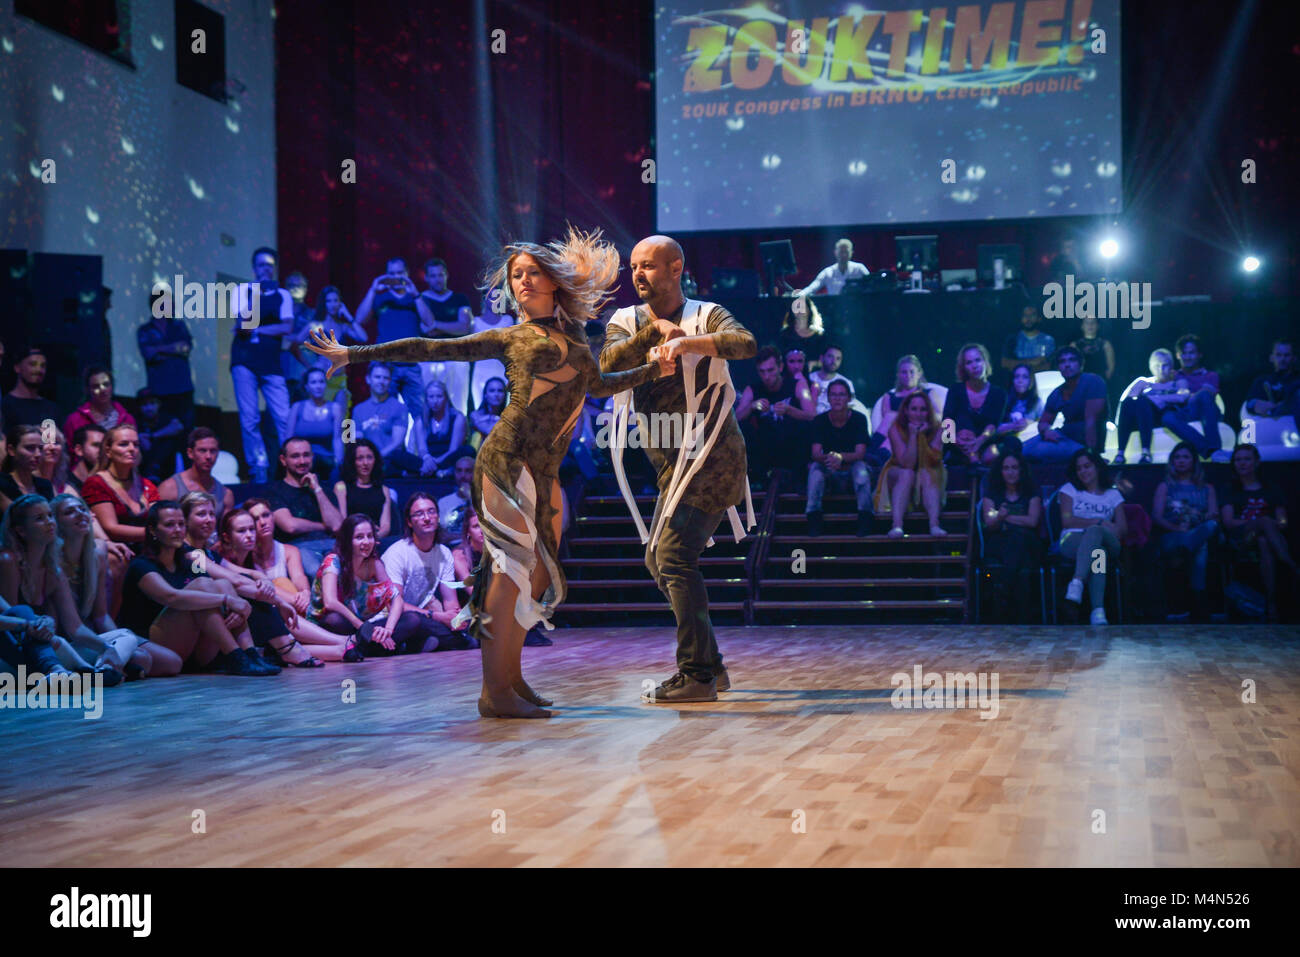 Brno, République tchèque - 30 septembre 2017 : spectacle avec chorégraphie charismatique talentueux artistes à un festival de danse Show, ZoukTime Banque D'Images